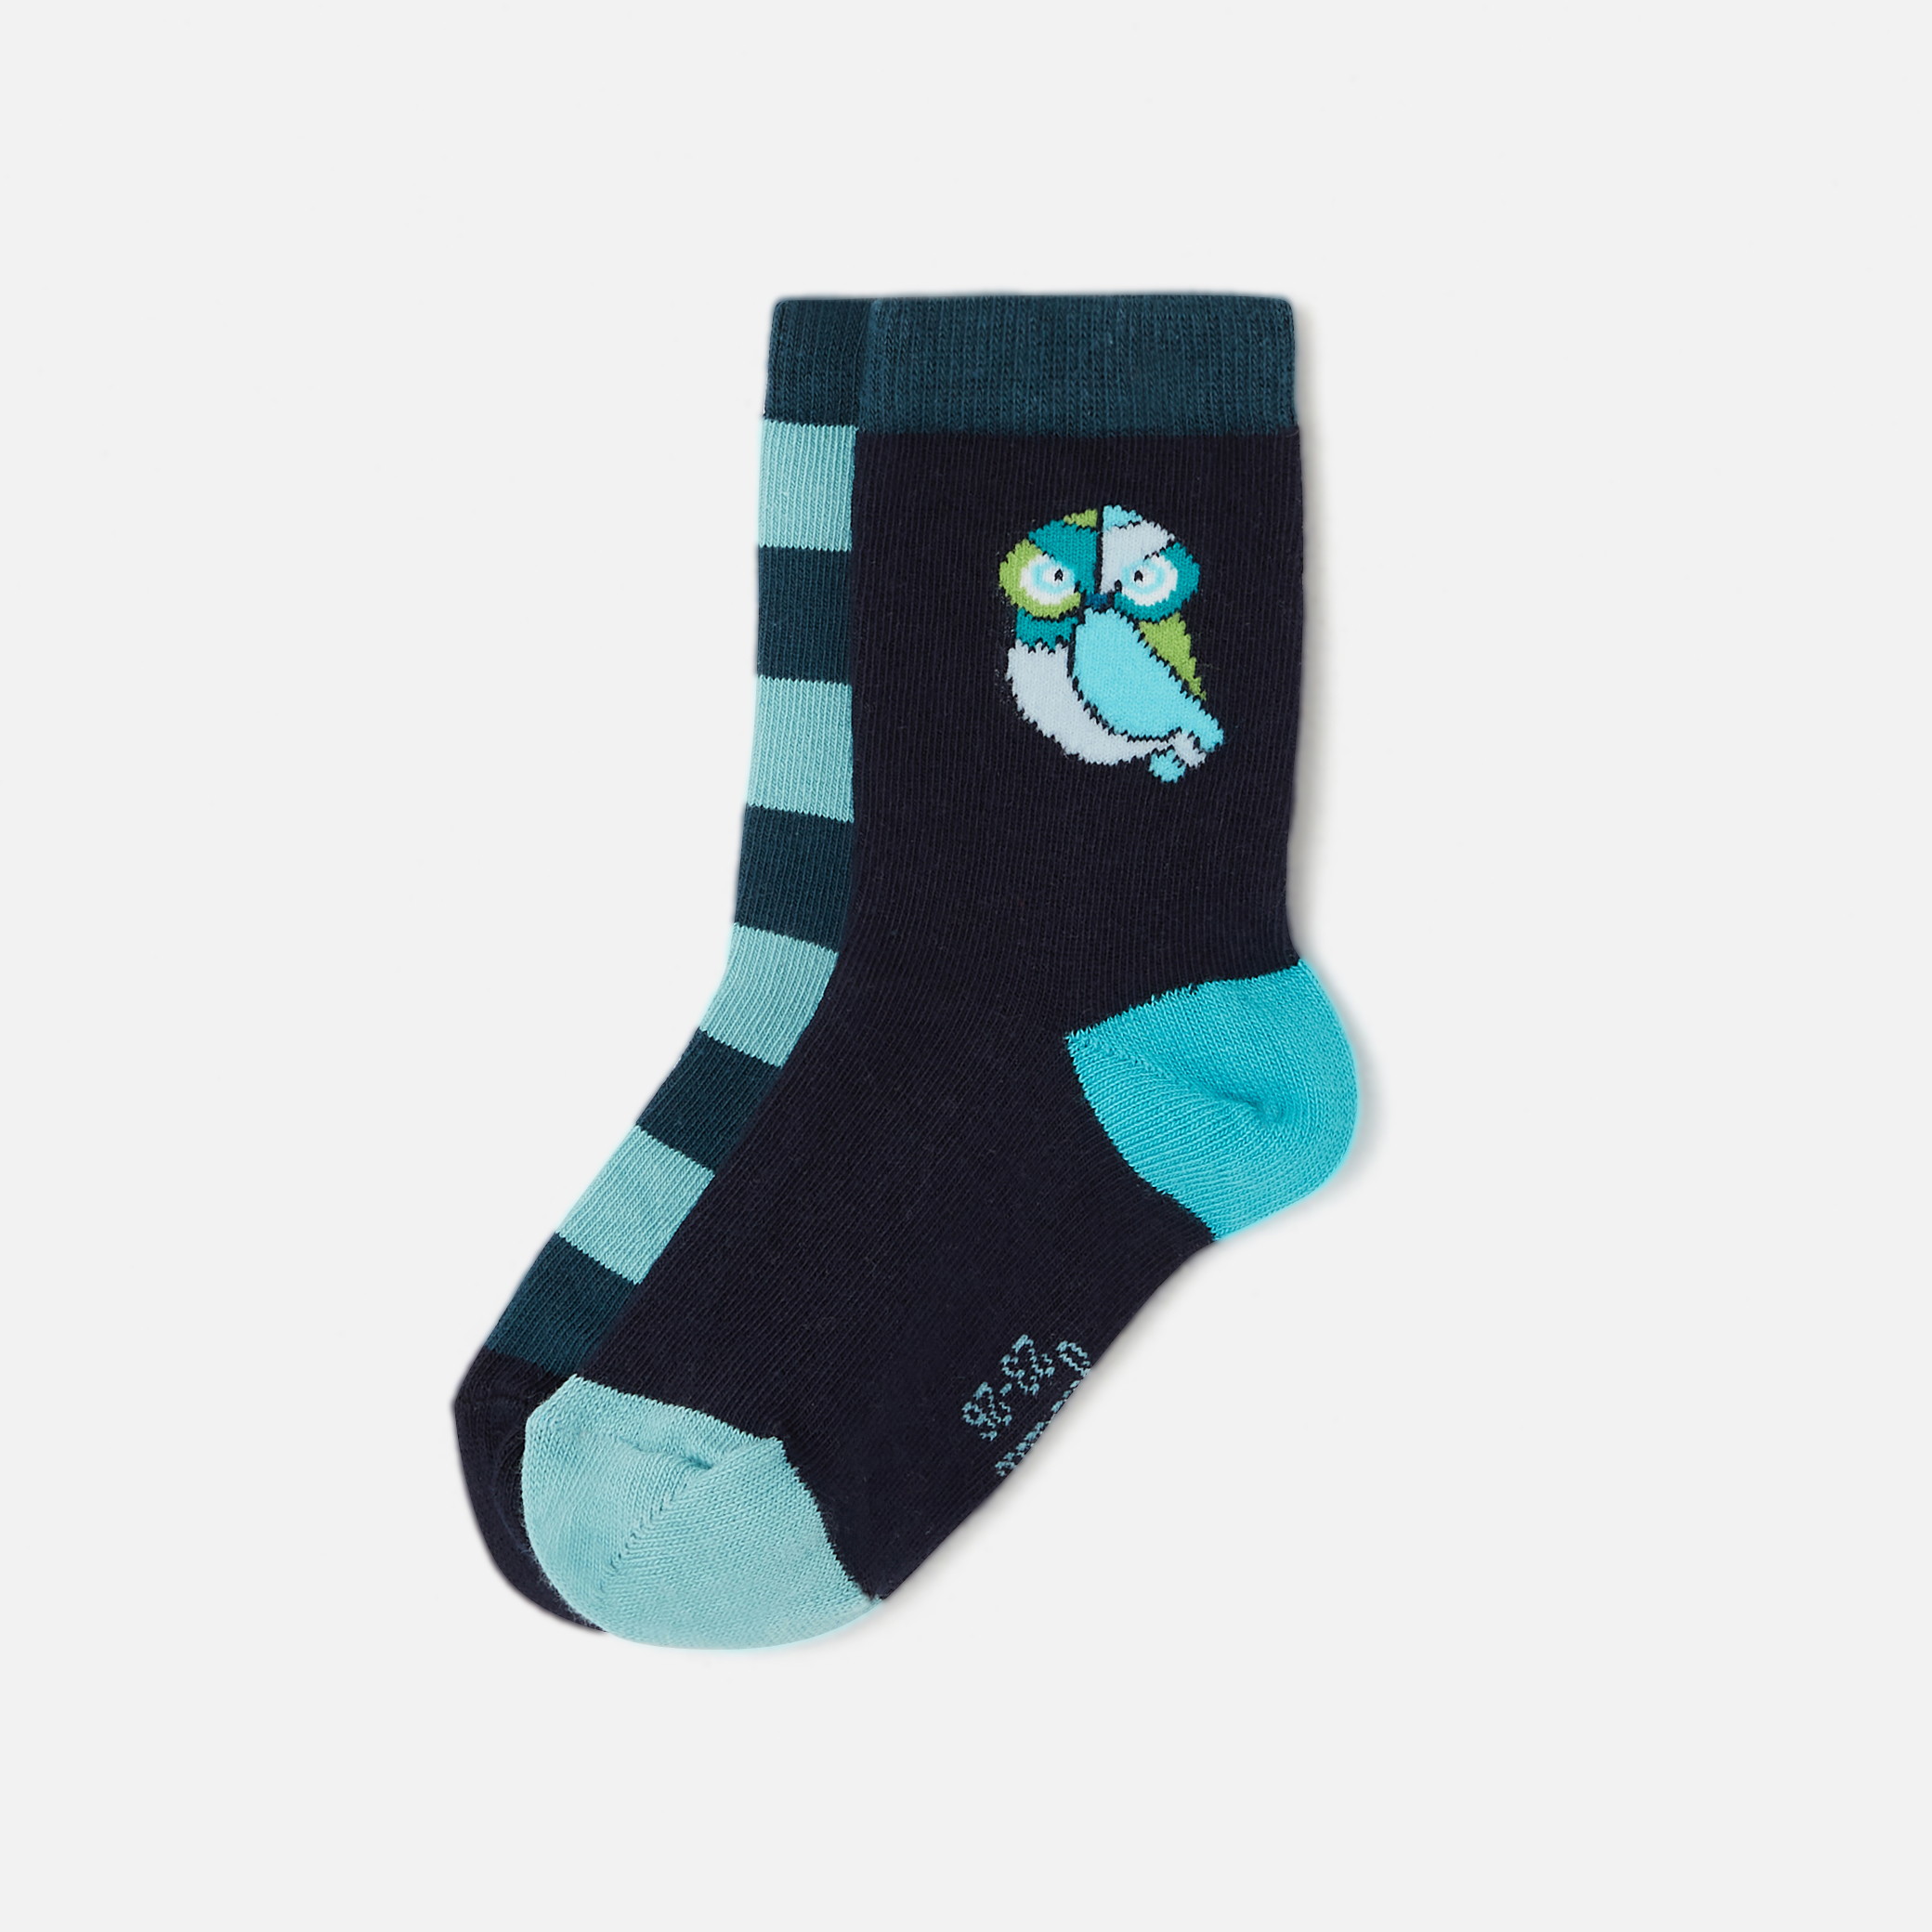 Boy socks